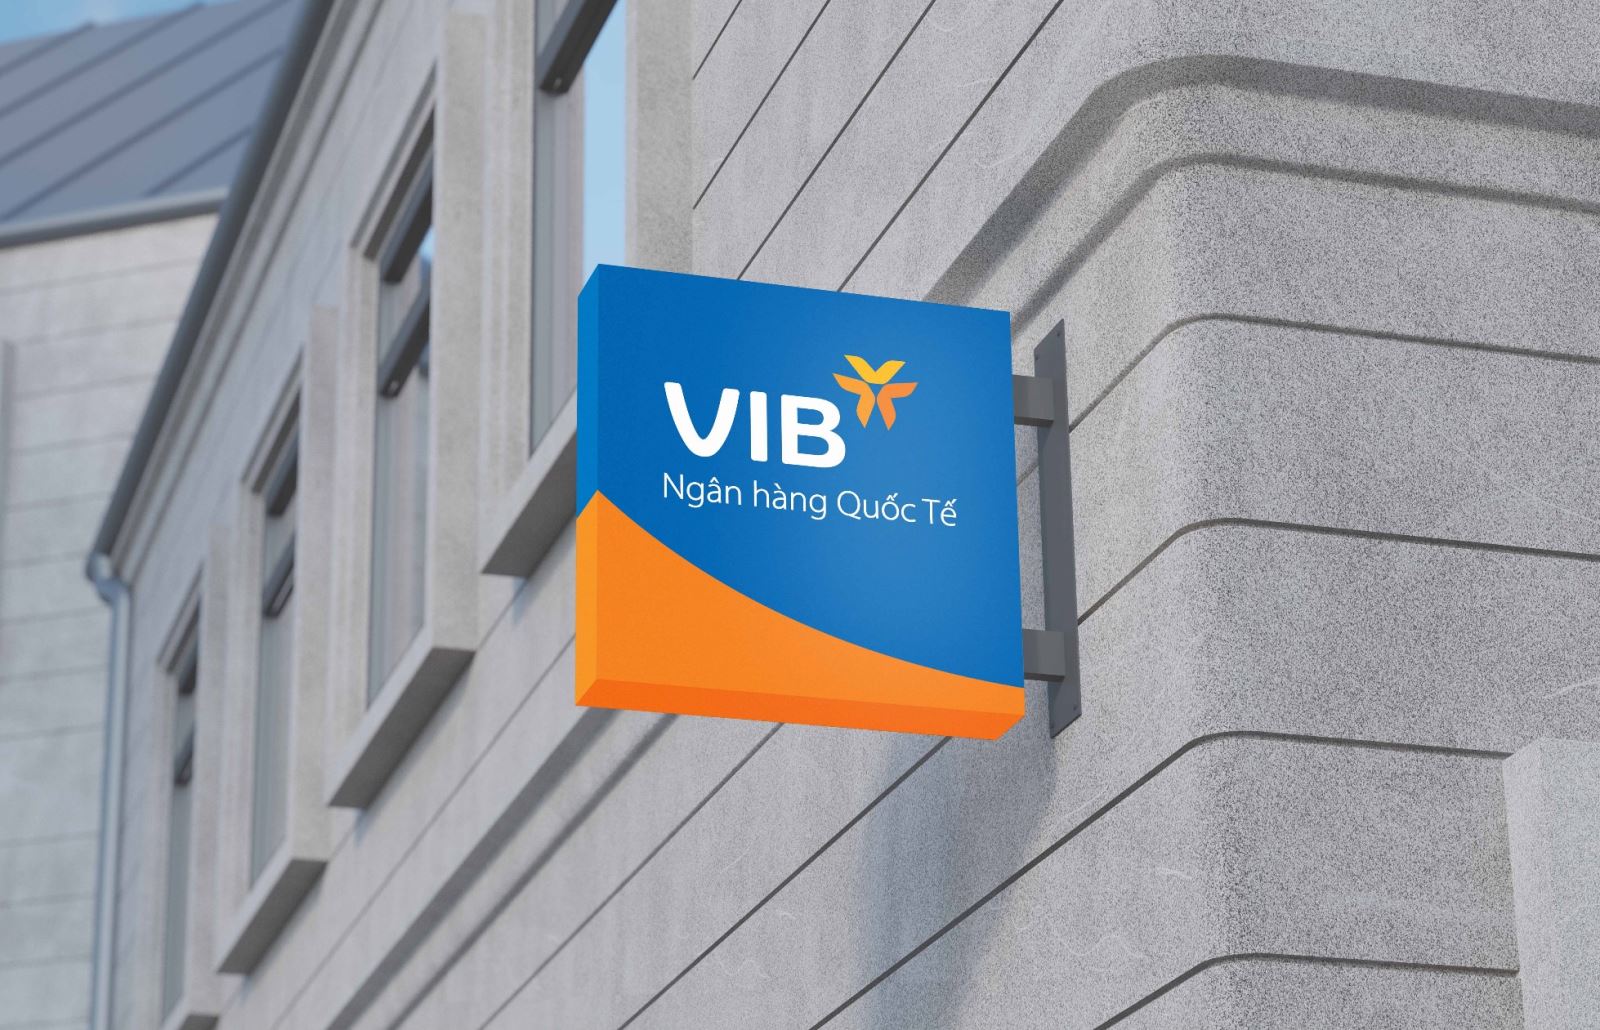 VIB mở rộng hình thức thanh toán qua Google Pay